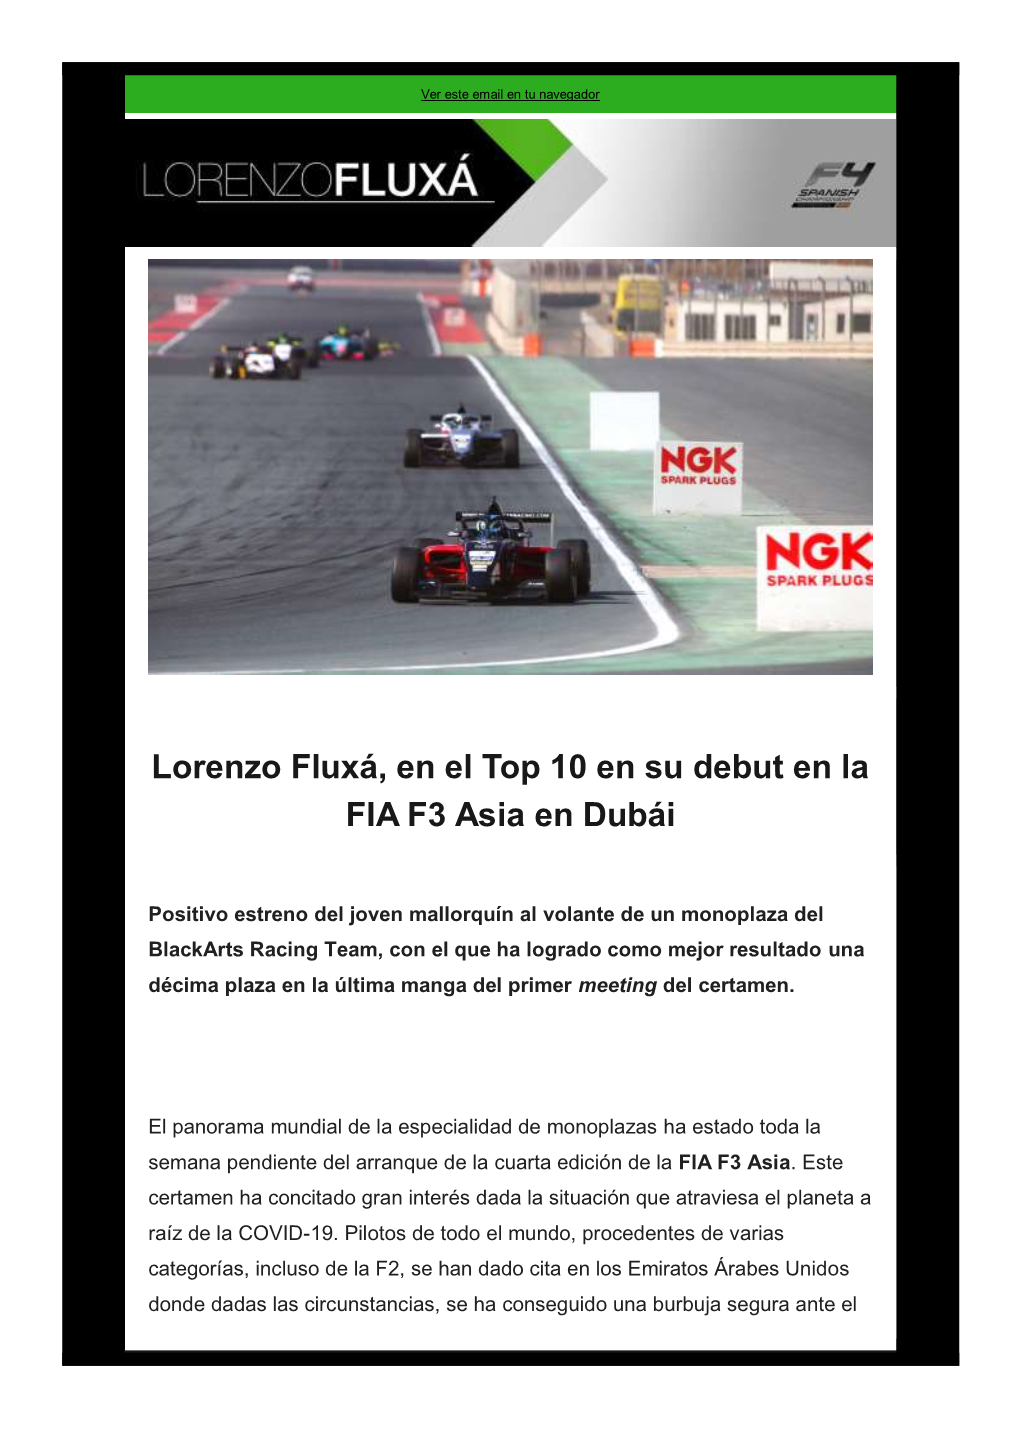 Lorenzo Fluxá, En El Top 10 En Su Debut En La FIA F3 Asia En Dubái